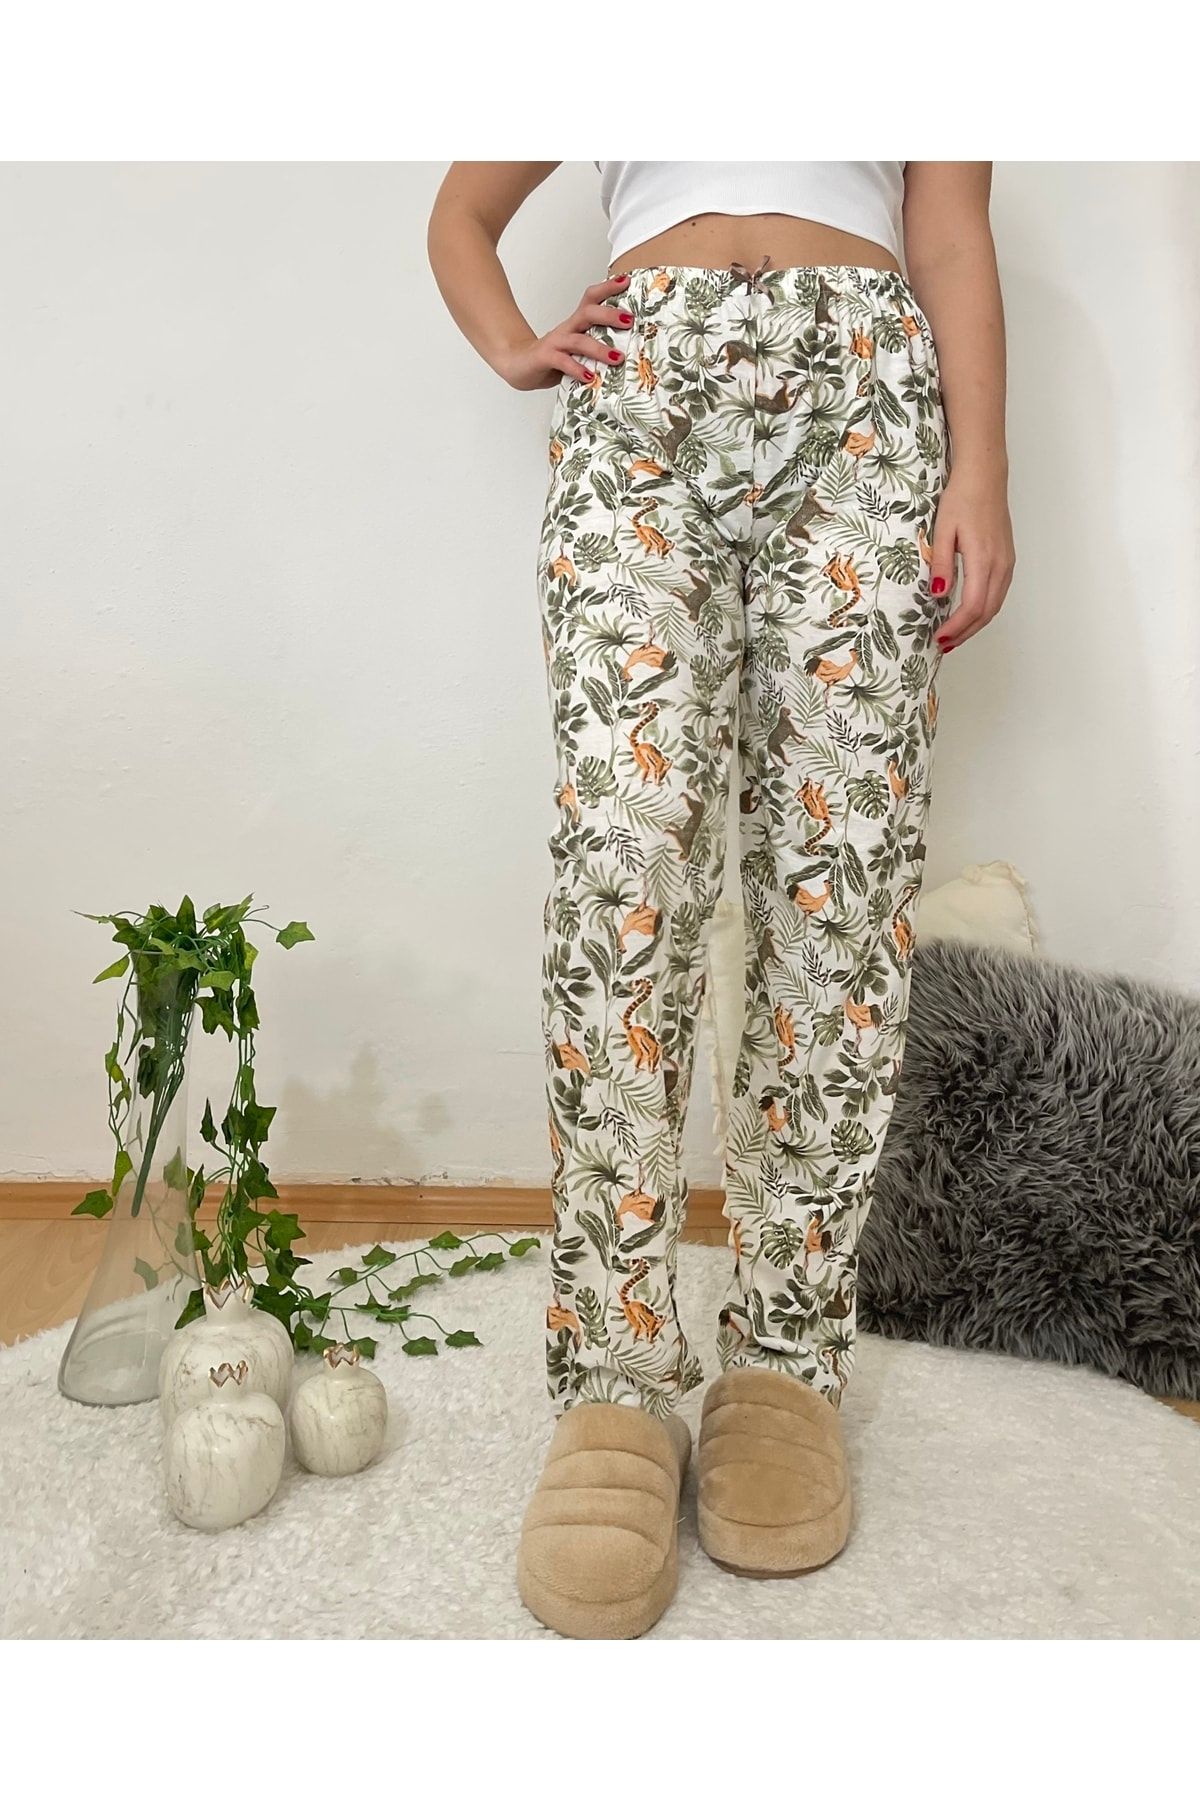 Betimoda Kadın Pijama Altı Kurdeleli Yeşil Yapraklı Horoz Desenli